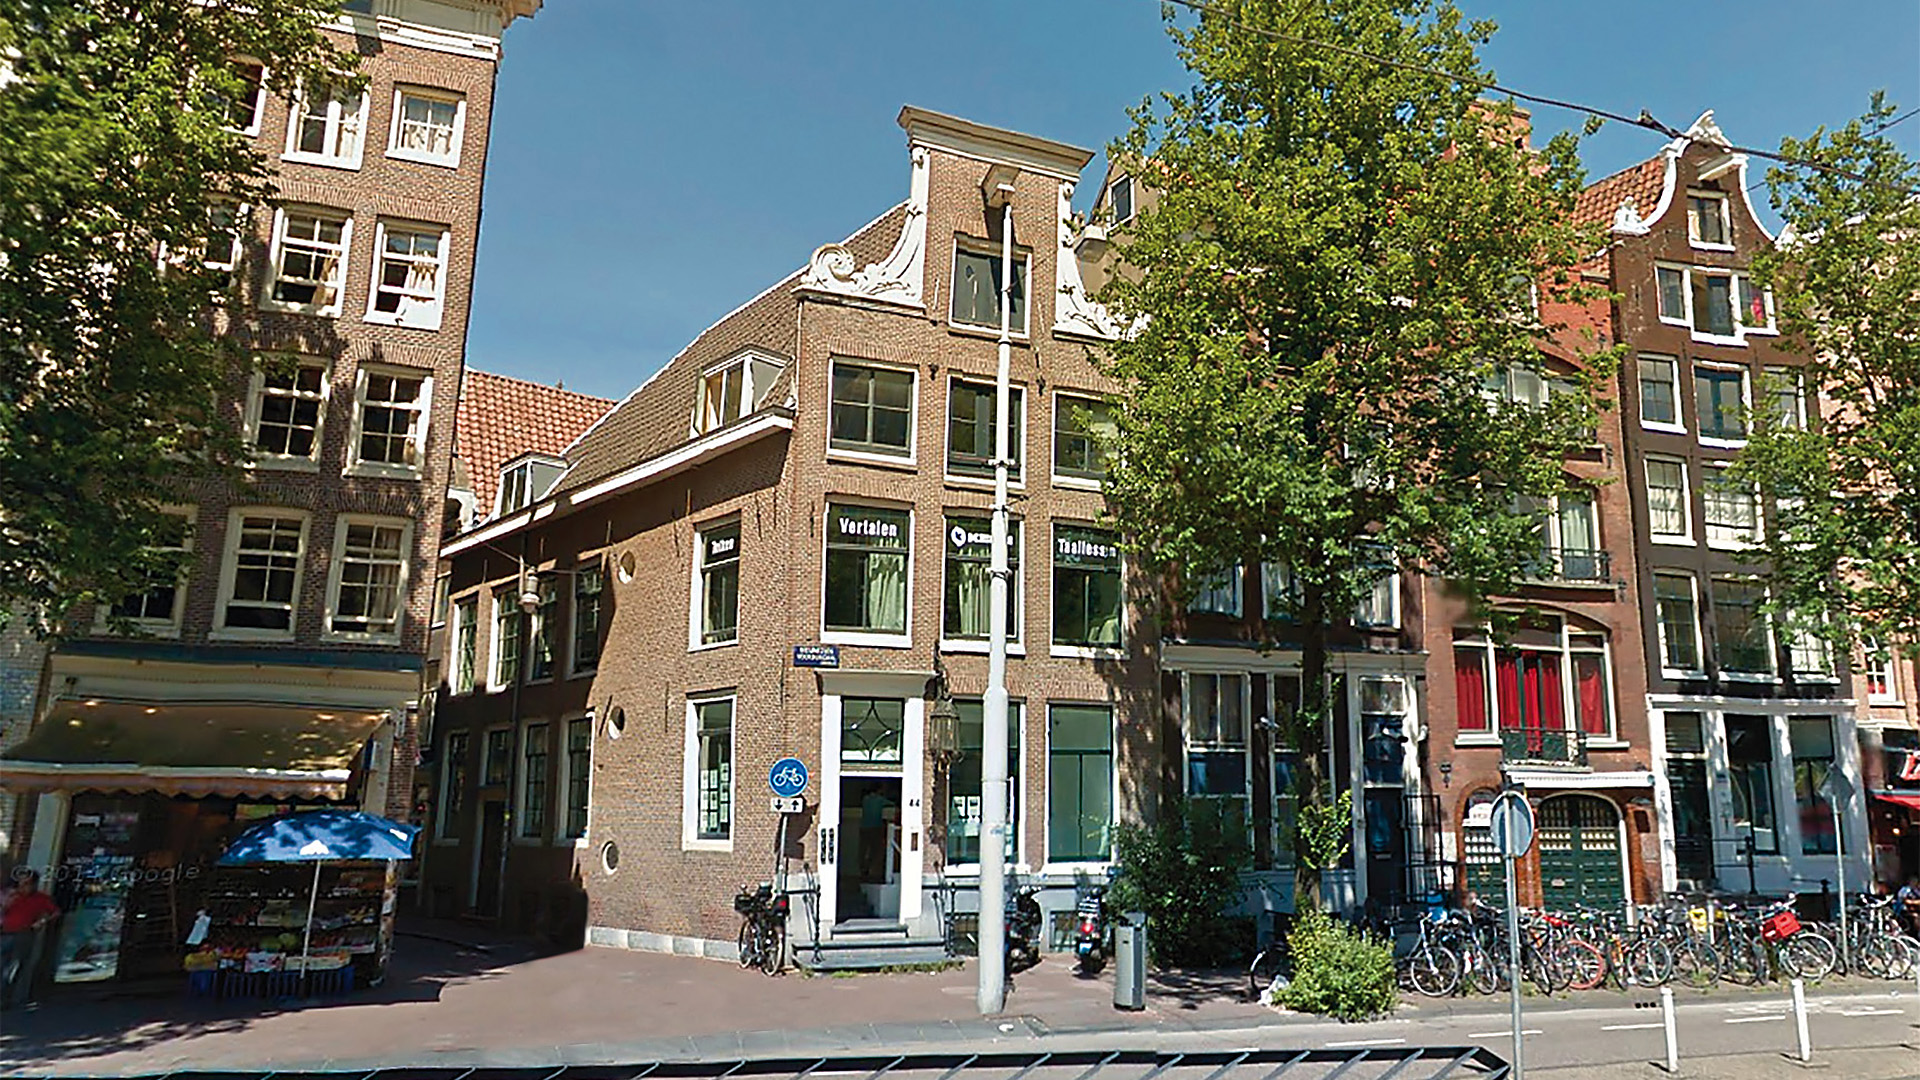 Biuro tłumaczeń w Amsterdamie